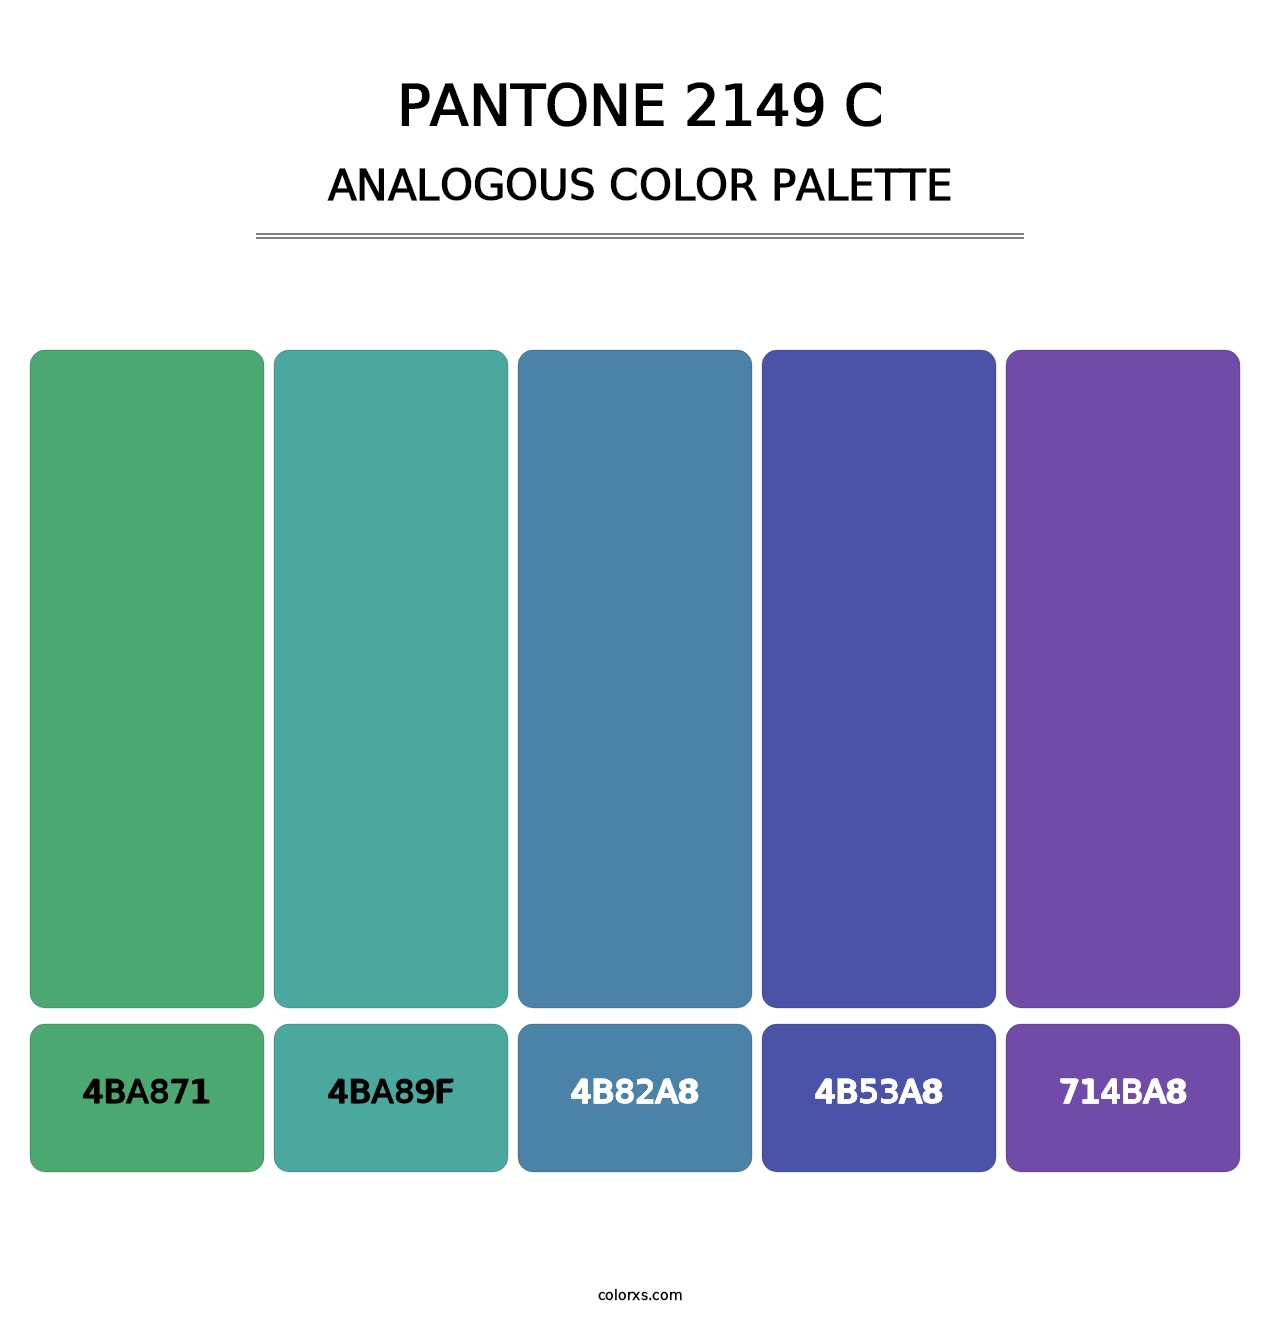 PANTONE 2149 C - Analogous Color Palette